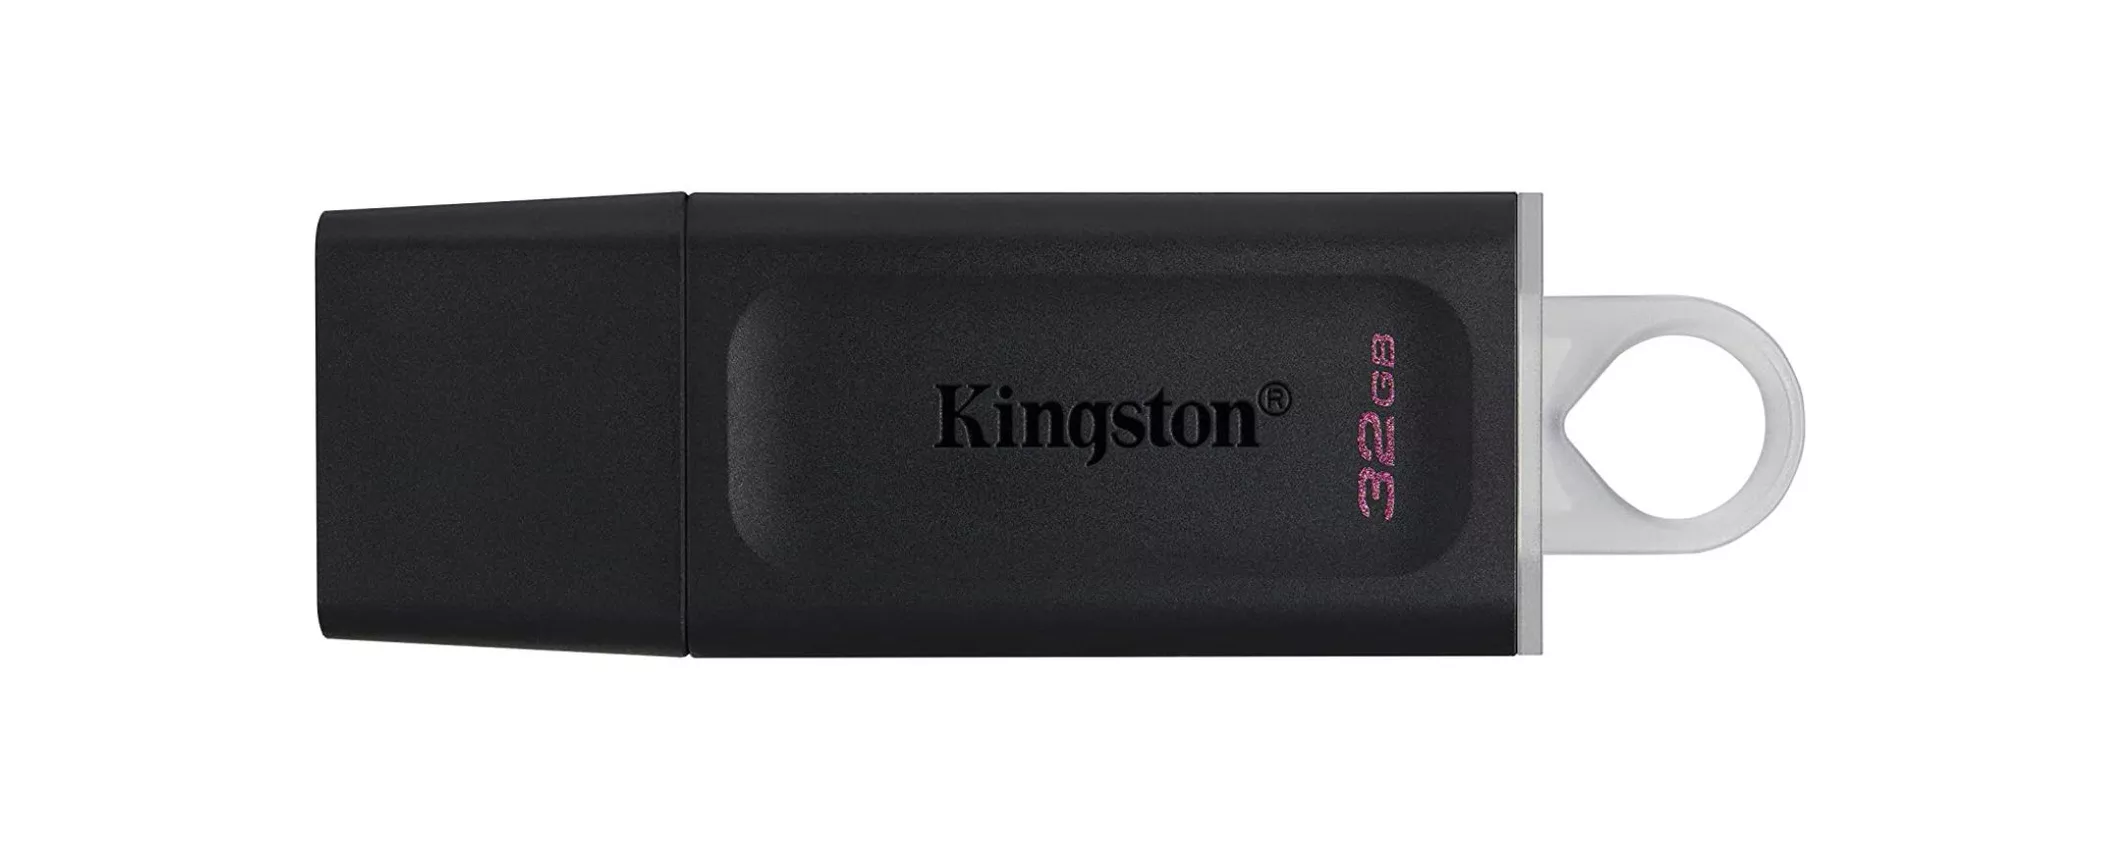 Chiavetta Kingston 32GB super veloce: solo 5€ con spedizioni